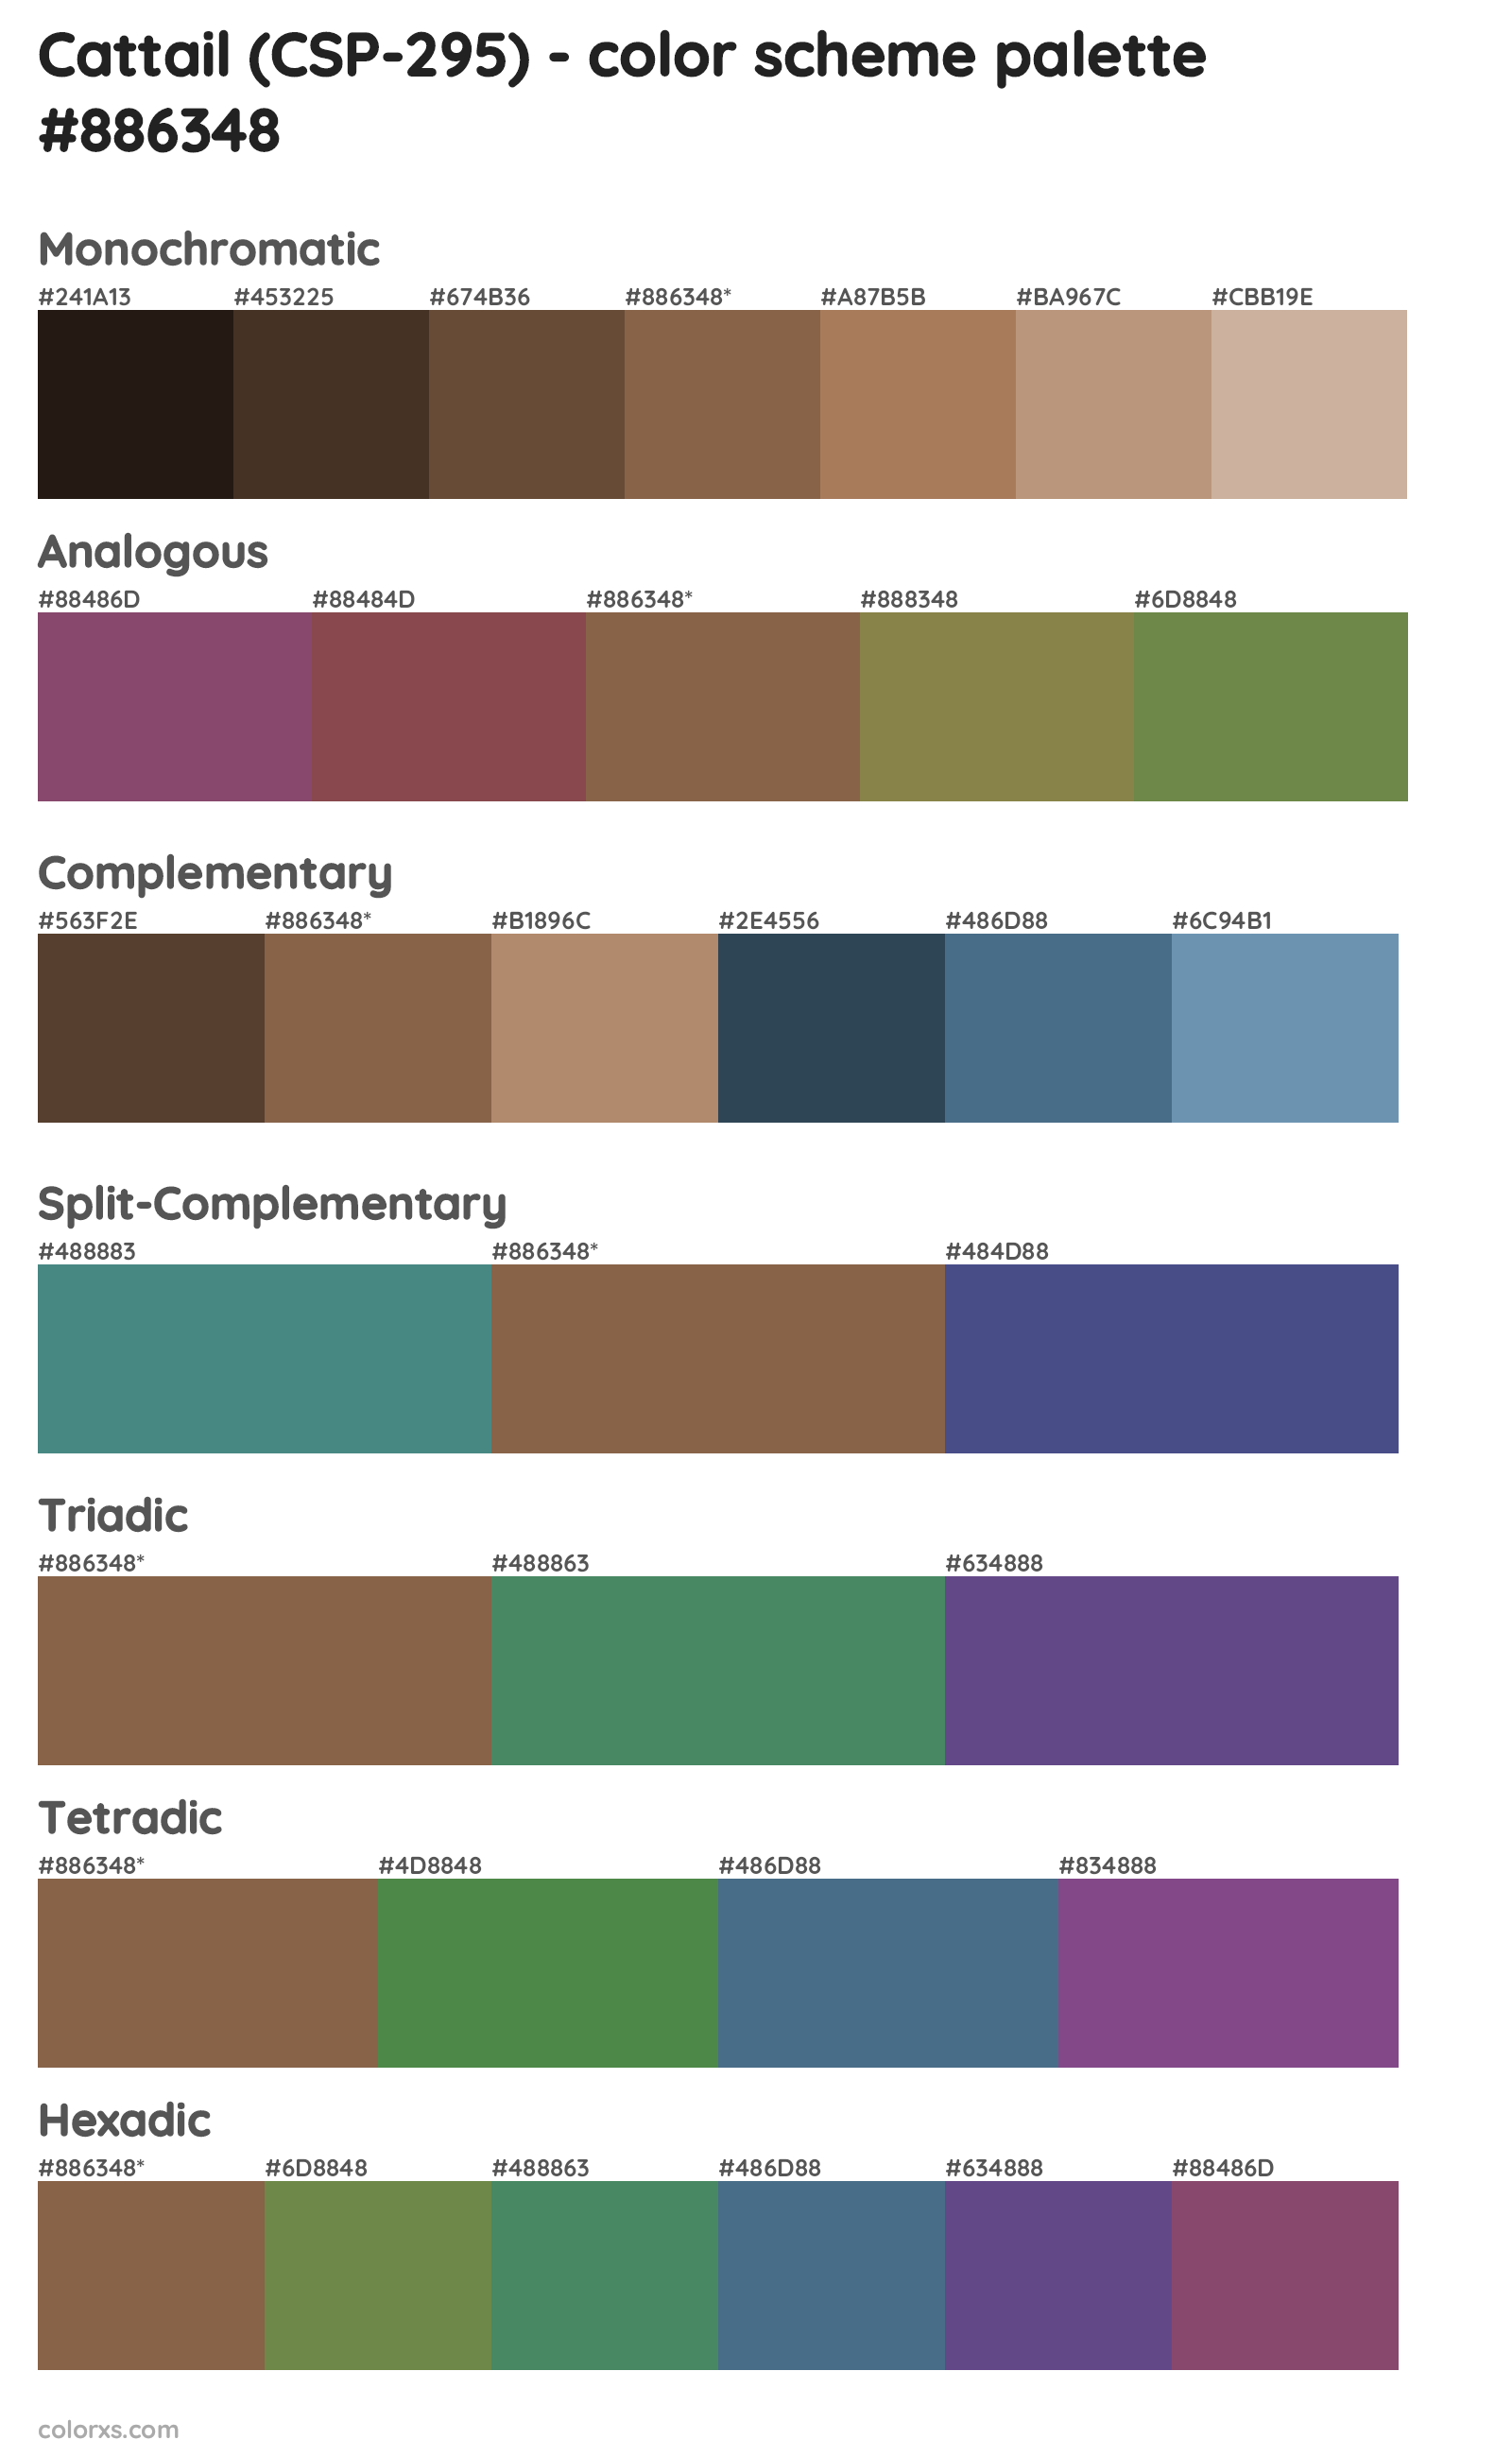 Cattail (CSP-295) Color Scheme Palettes